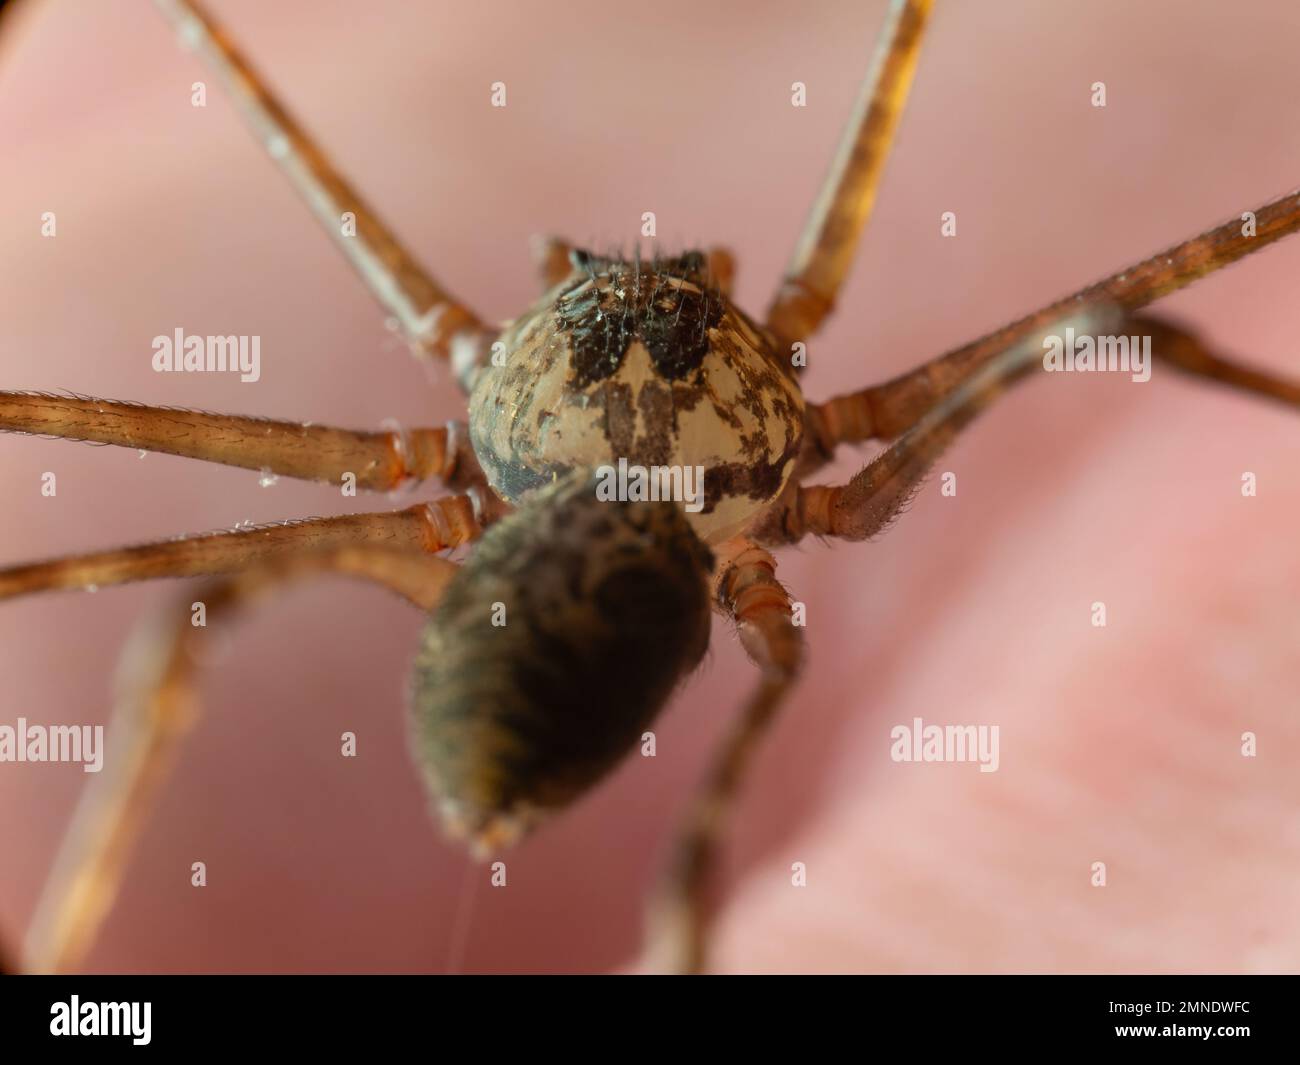 Détails d'une araignée à cracher (Scytodes) sur la main humaine, également connue sous le nom de aranha cuspideira. Banque D'Images